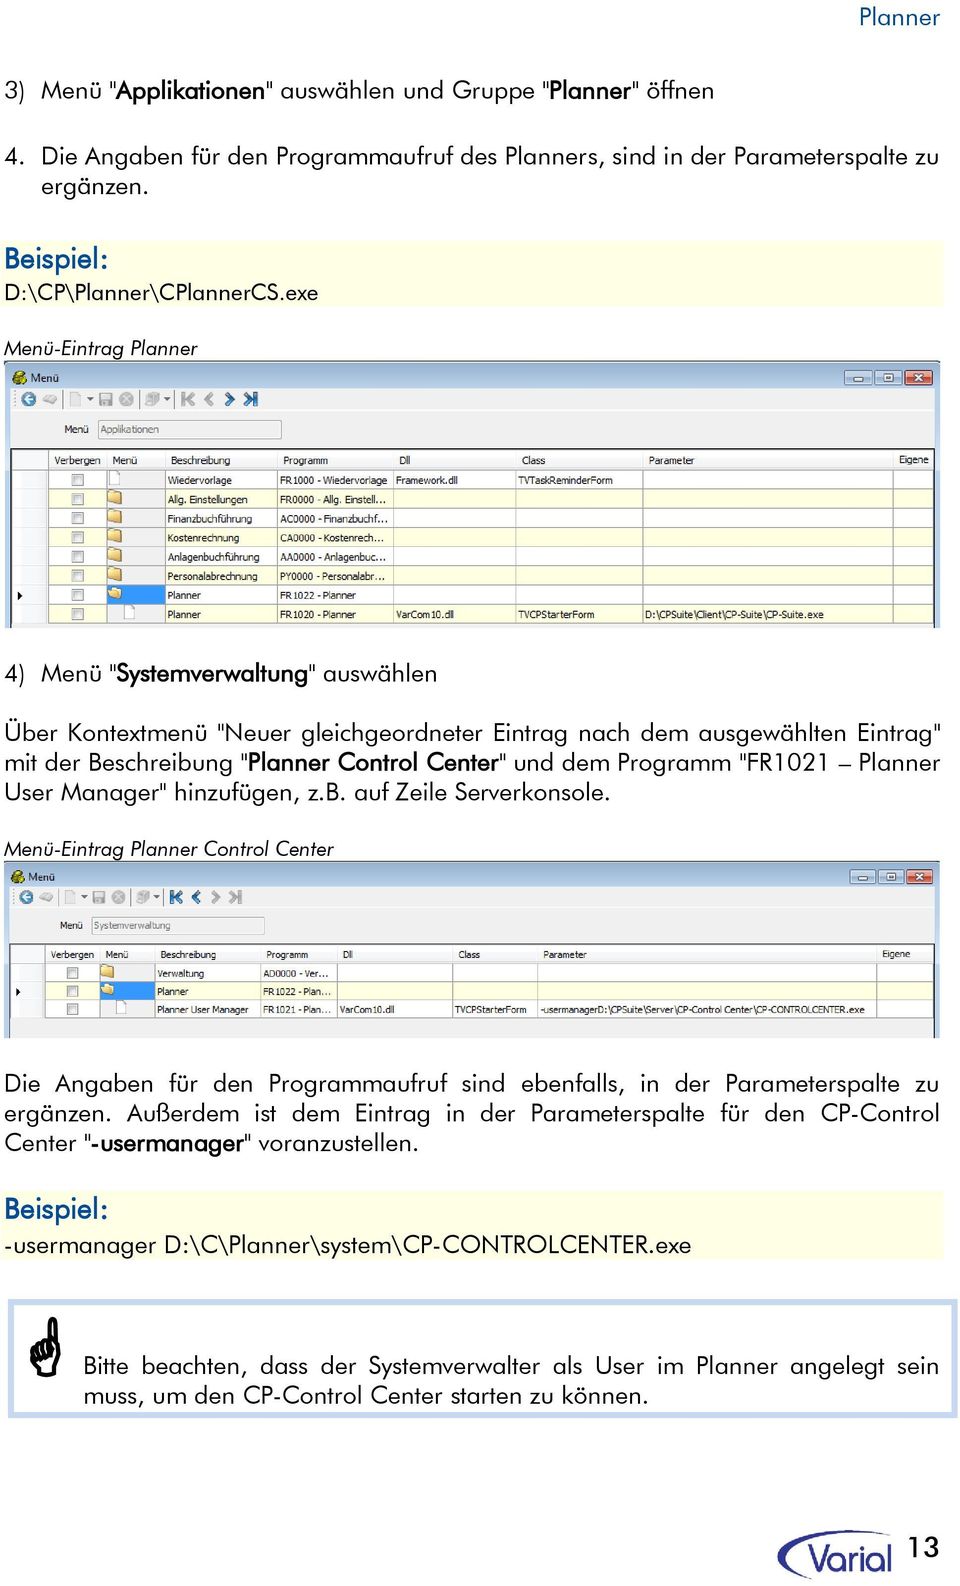 Programm "FR1021 Planner User Manager" hinzufügen, z.b. auf Zeile Serverkonsole.